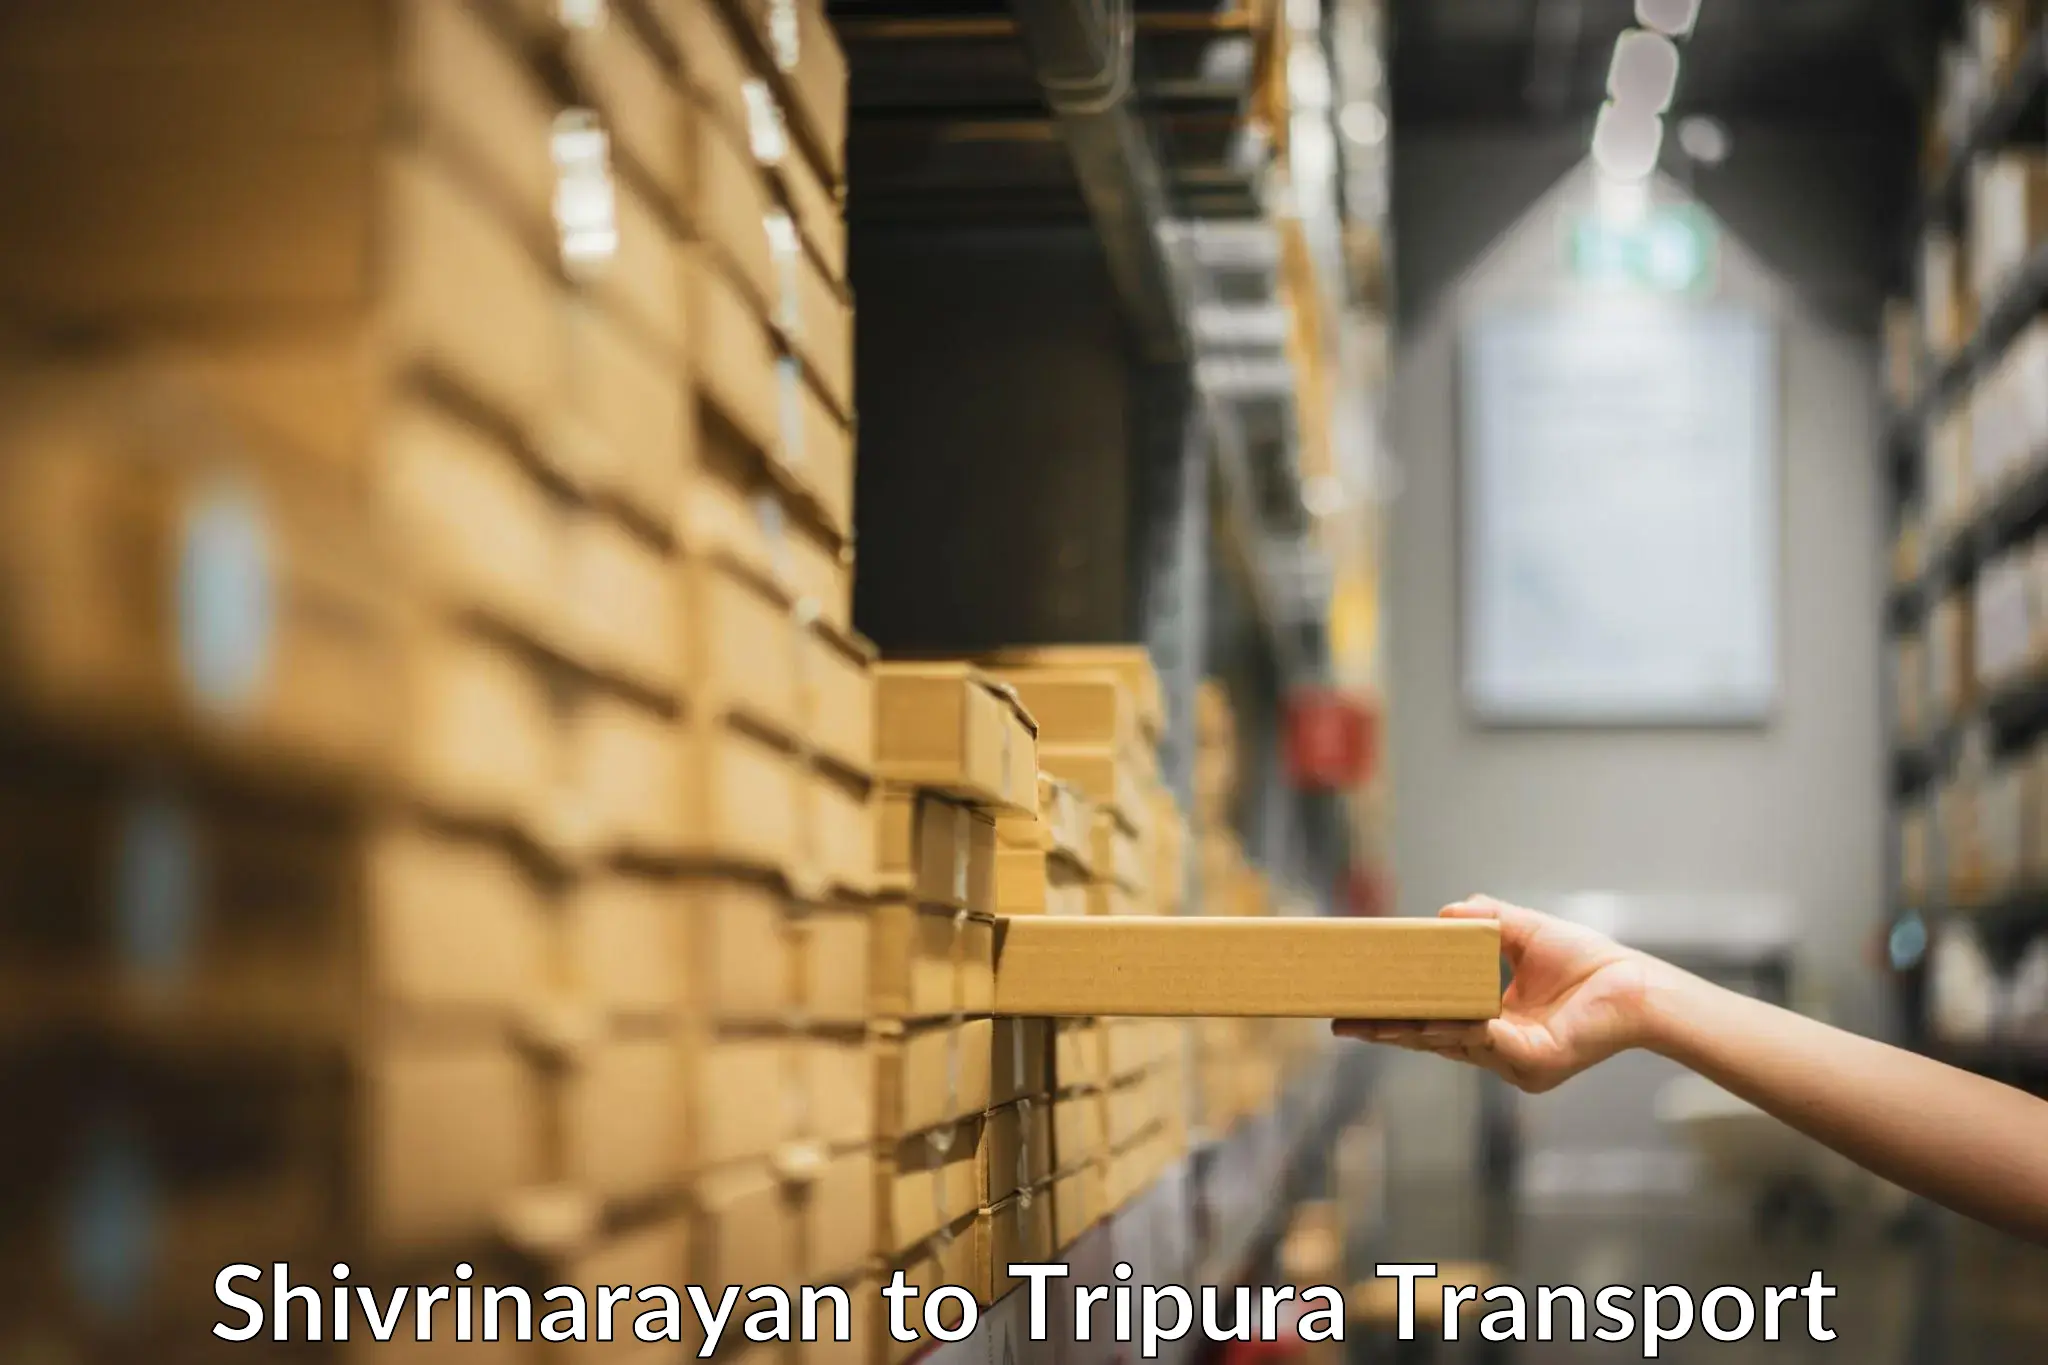 Truck transport companies in India Shivrinarayan to Kamalpur